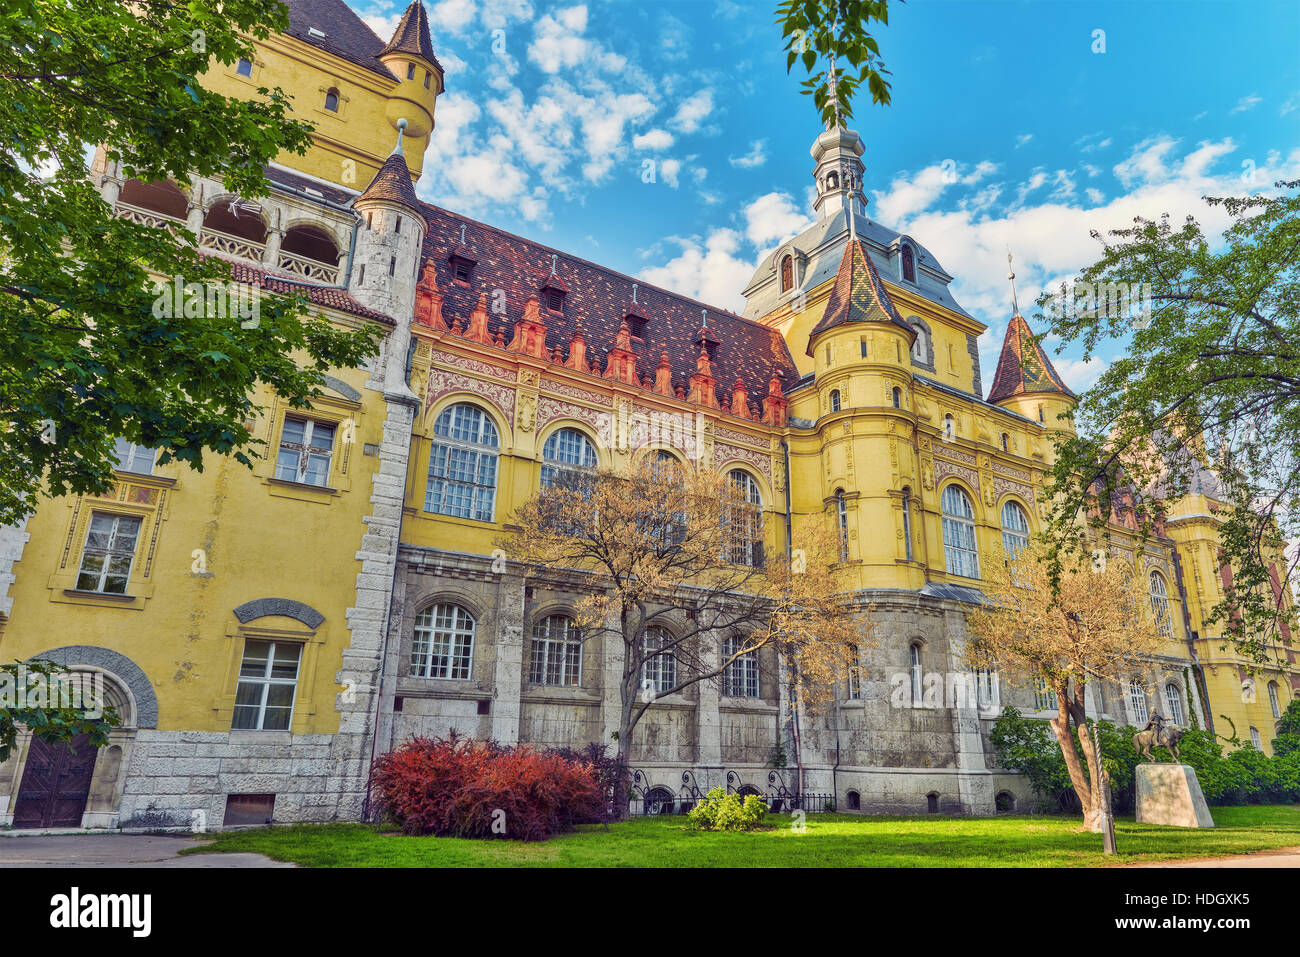 Vajdahunyad Castle (Hungarian-Vajdahunyad vara) is a castle in the City Park of Budapest, Hungary. Stock Photo